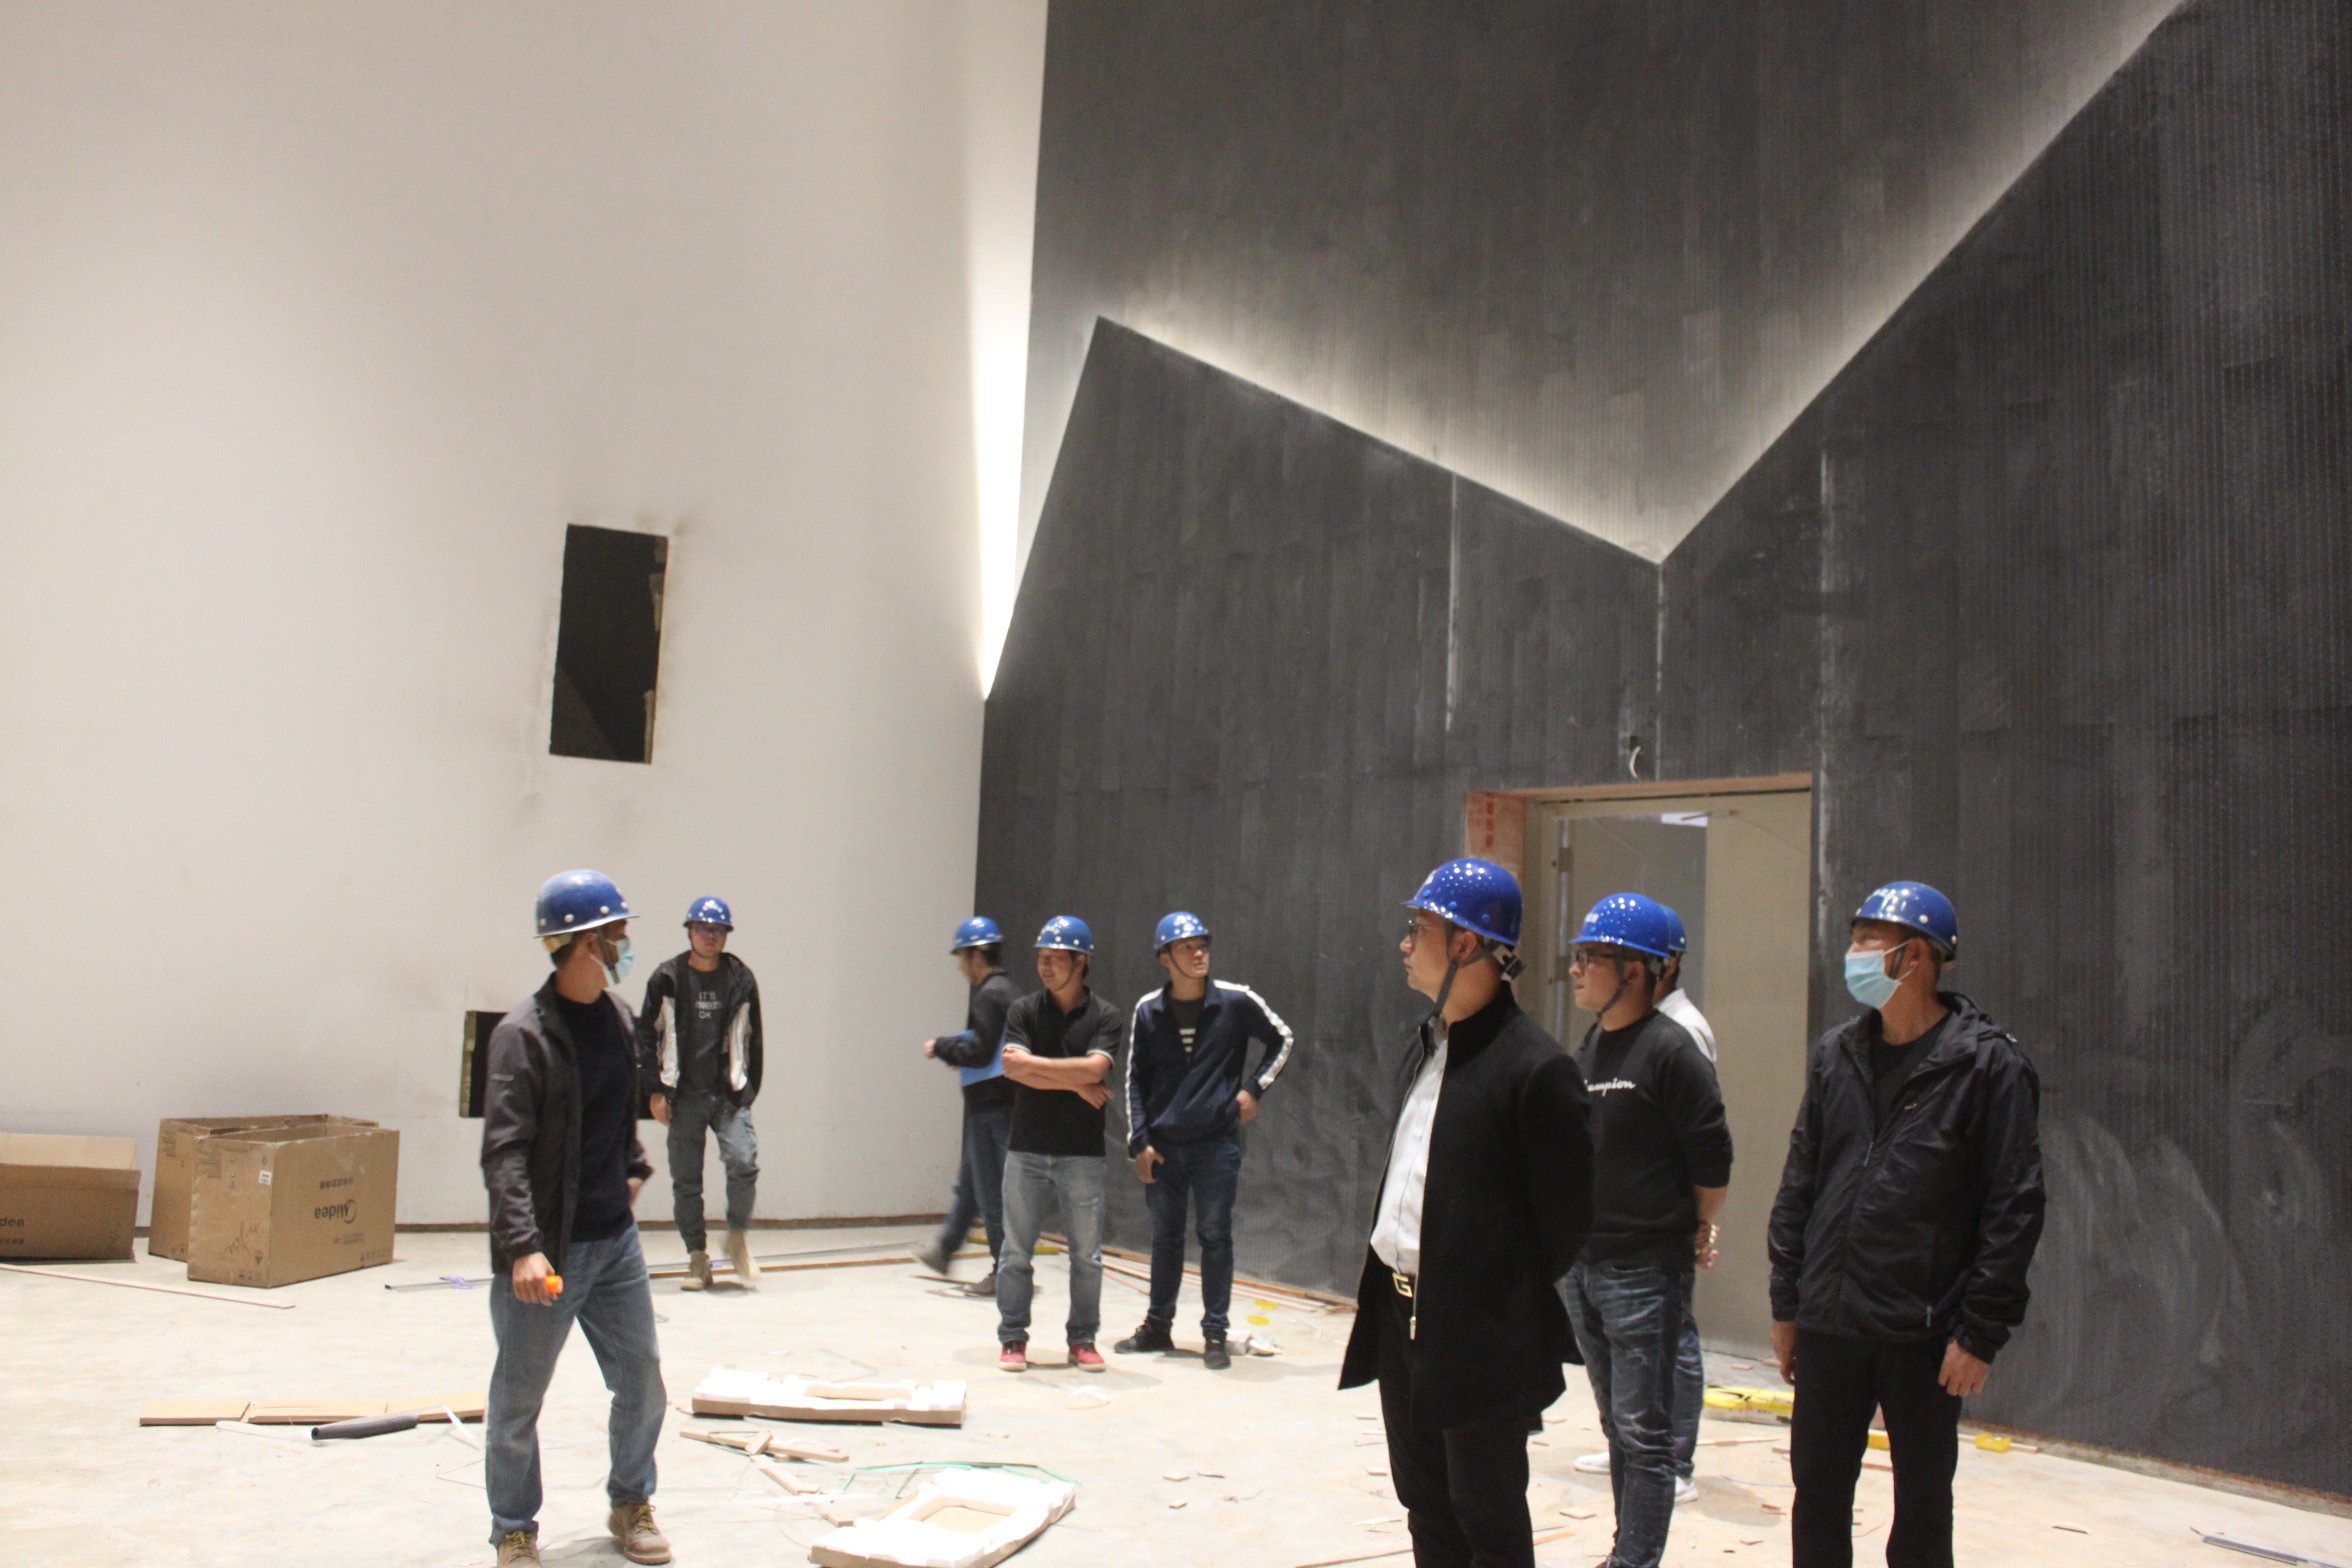 公司组织后备骨干到安宁市城市文化中心内装工程项目进行实地参观学习